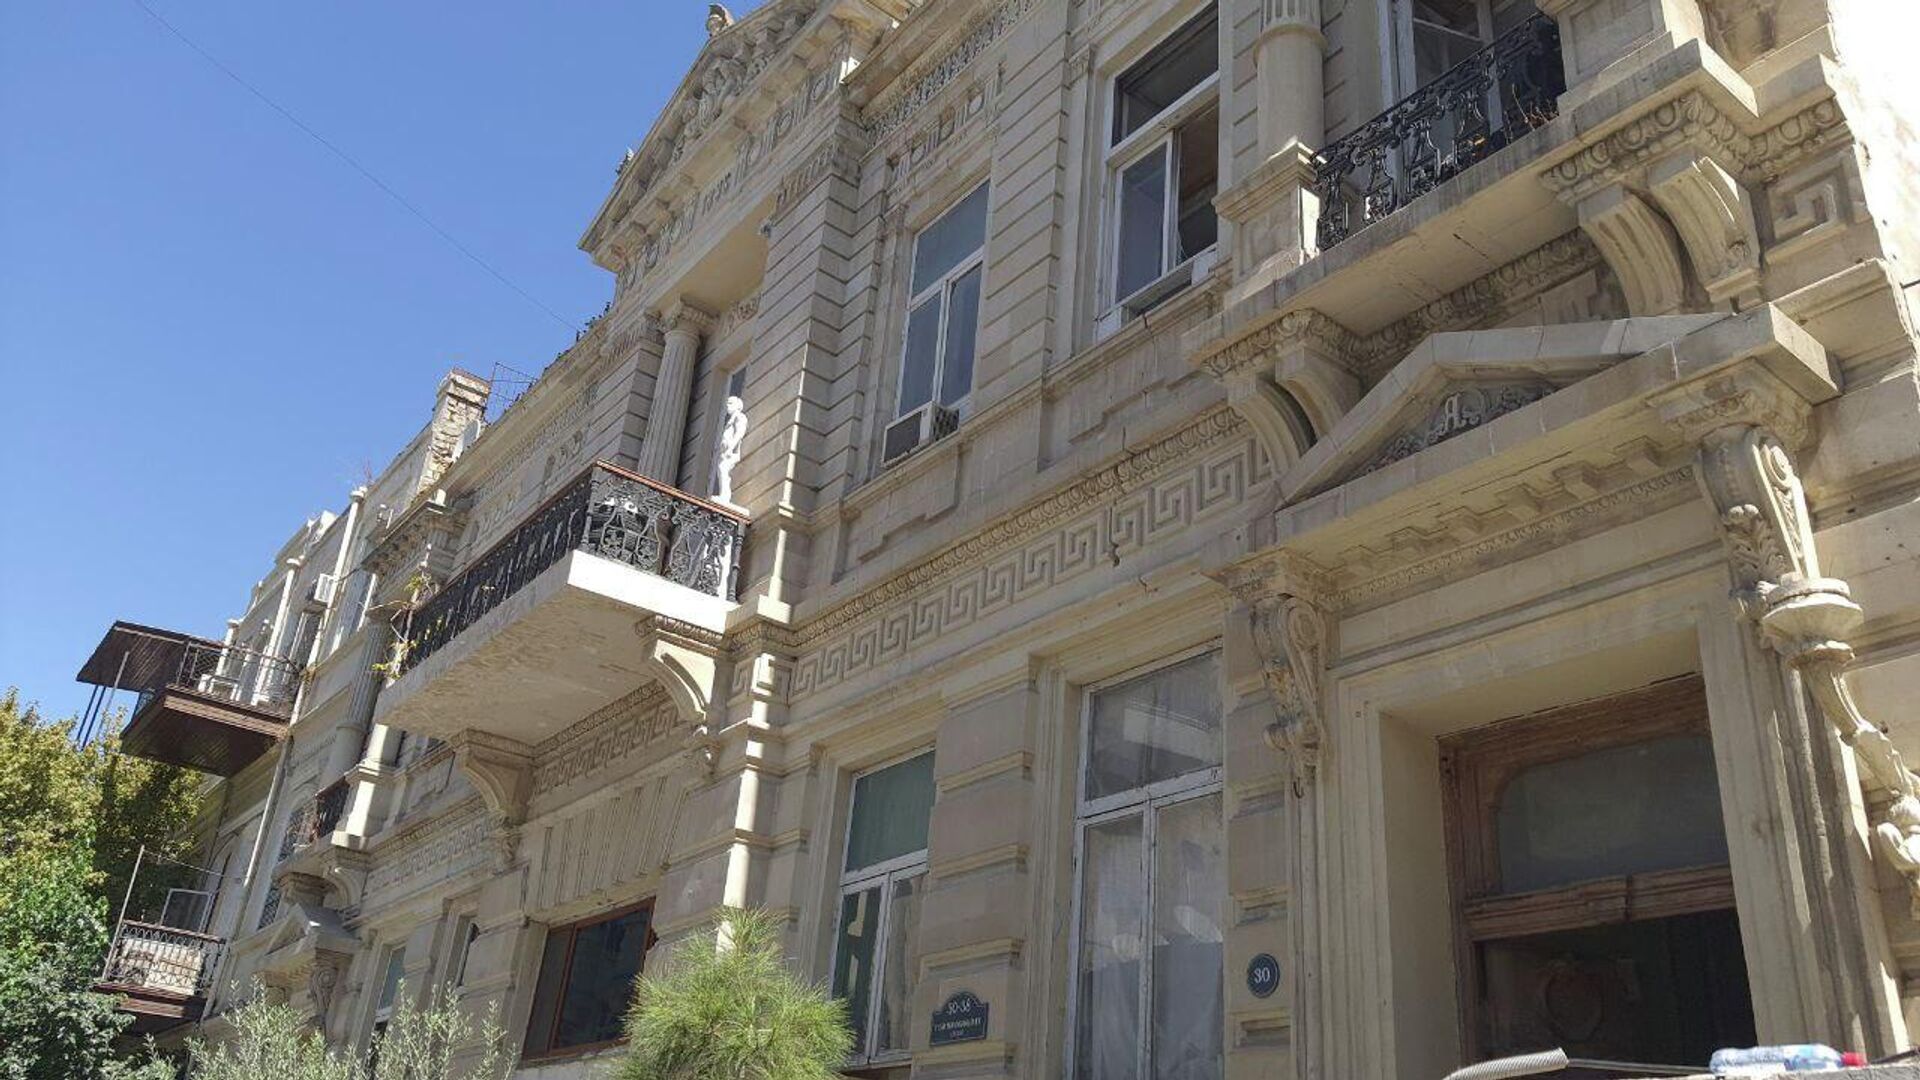 Дом с грифонами», расположенный на улице Юсифа Мамедалиева под номером 20 - Sputnik Азербайджан, 1920, 25.08.2022